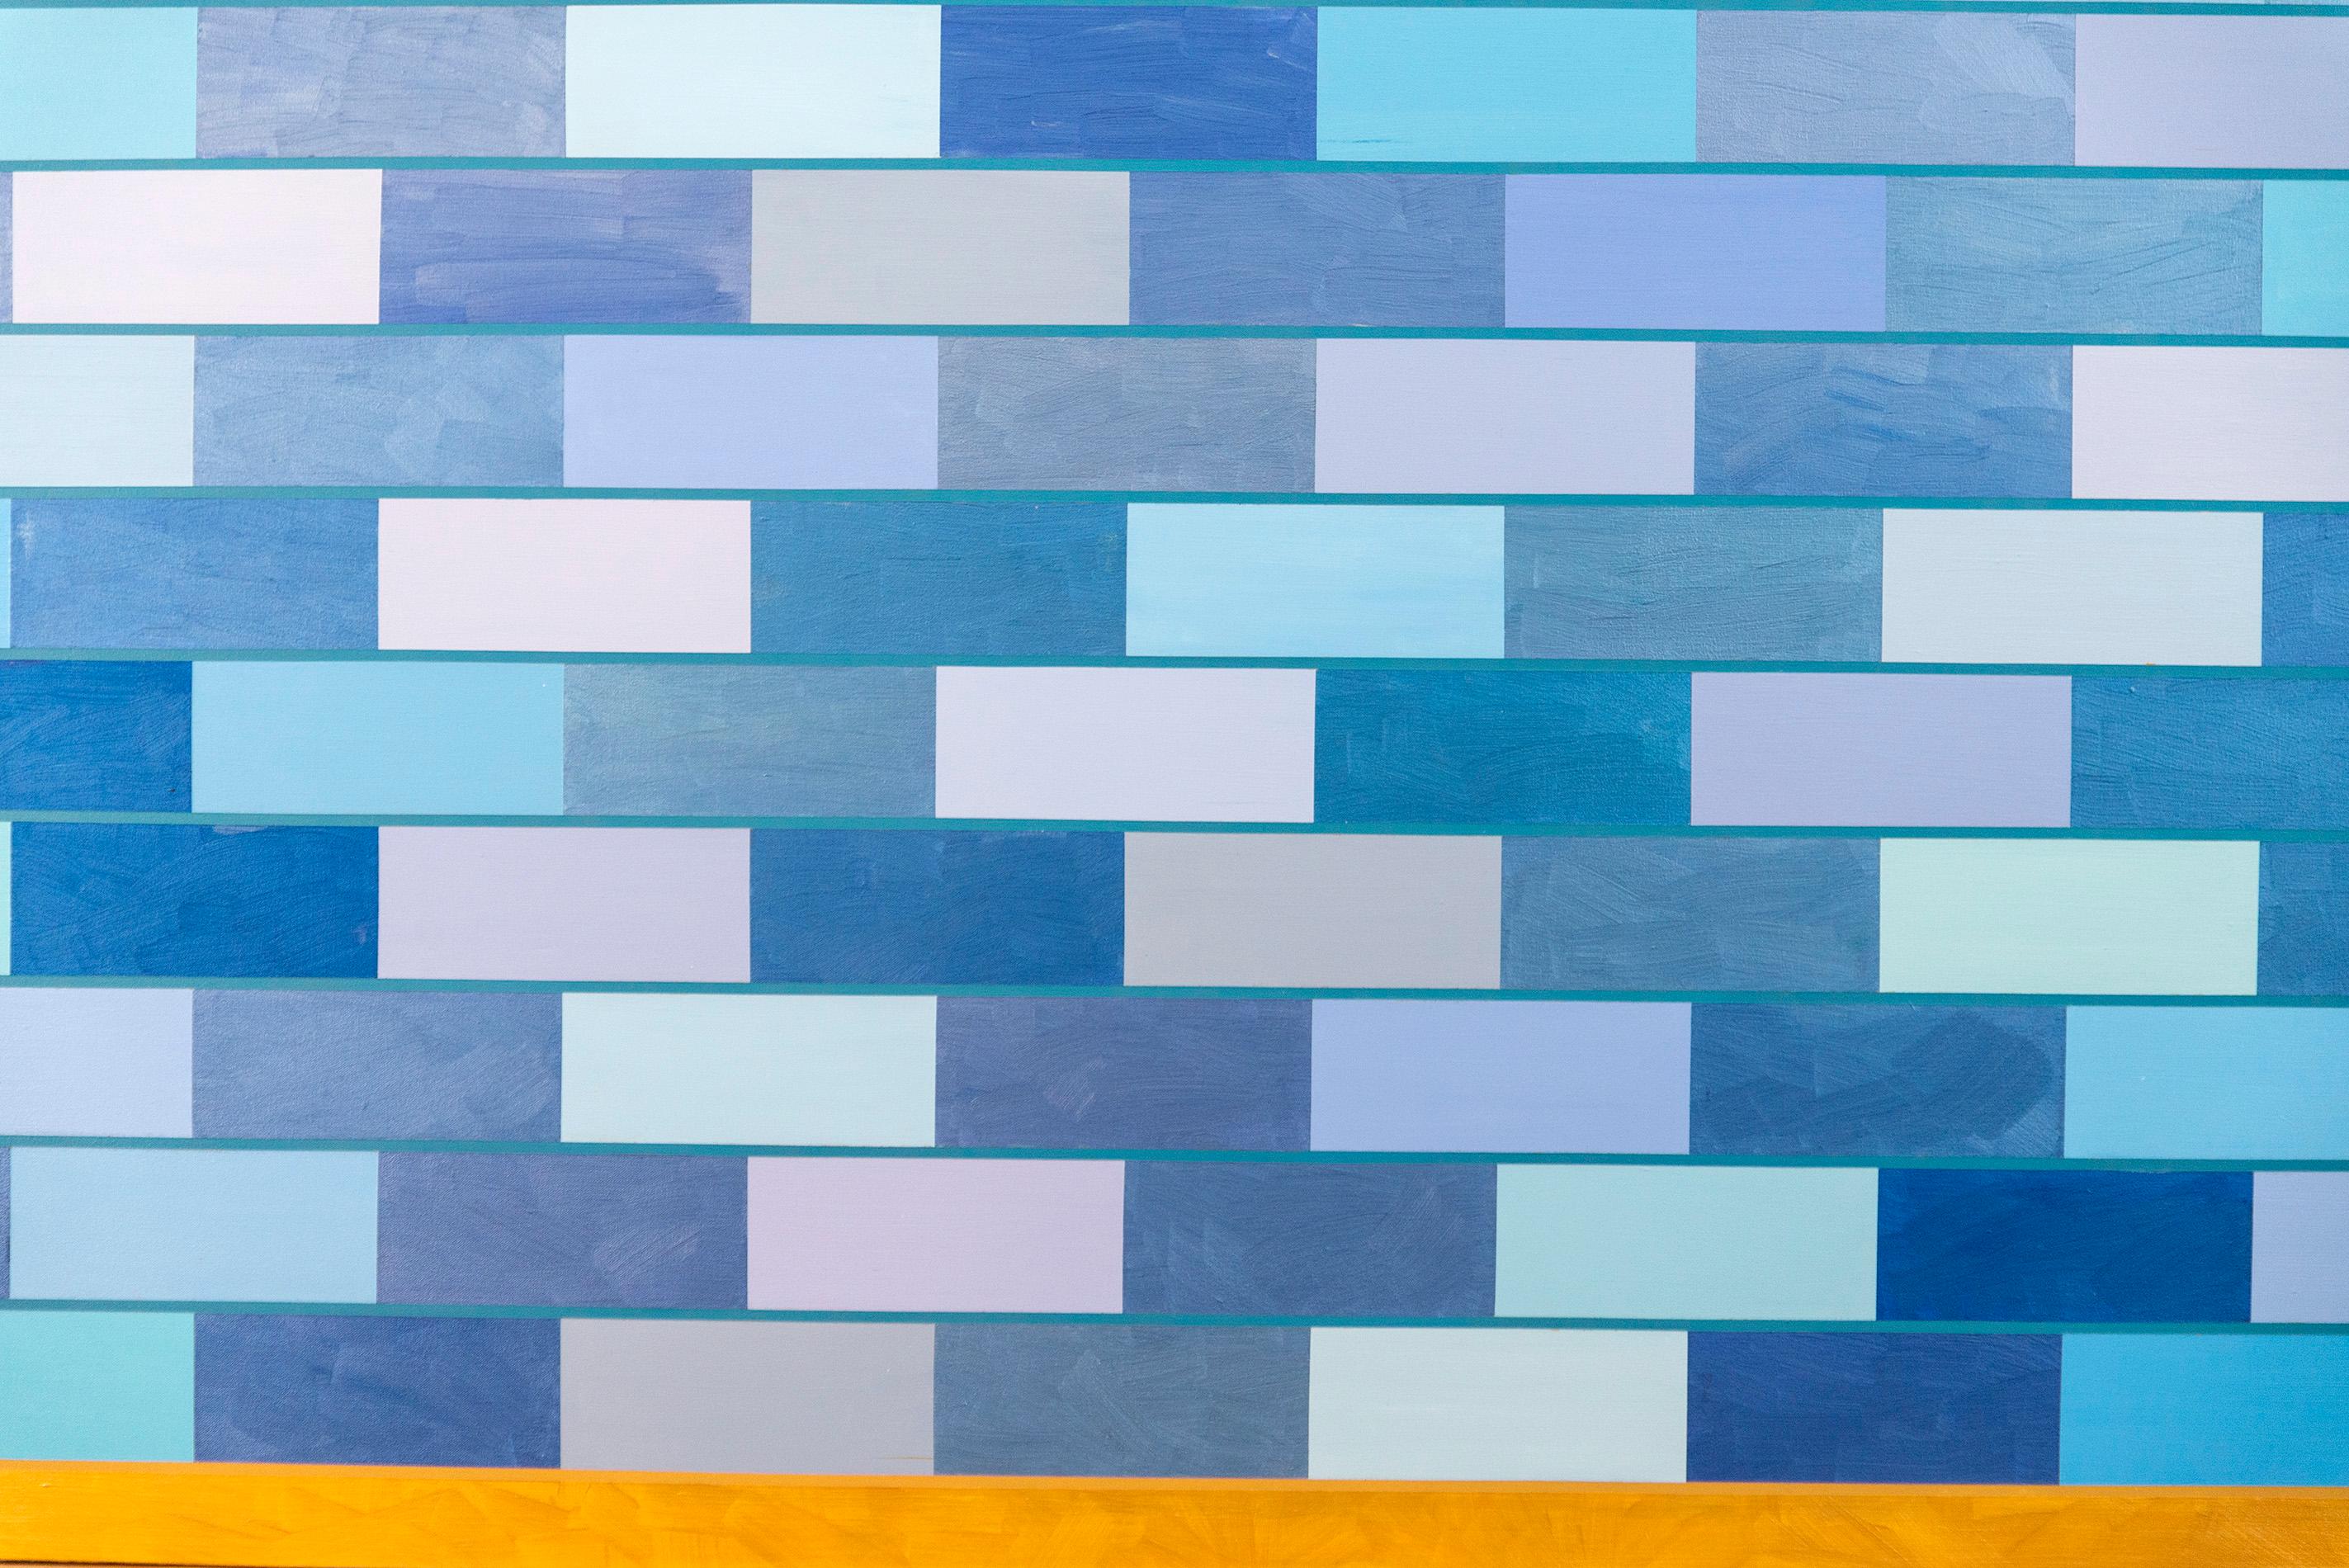 Dieses faszinierende, farbenfrohe zeitgenössische Gemälde, das durch seine Größe und architektonische Form besticht, stammt von der Kanadierin Yvonne Lammerich. Dieses Gemälde, das sowohl national als auch international für seine provokativen